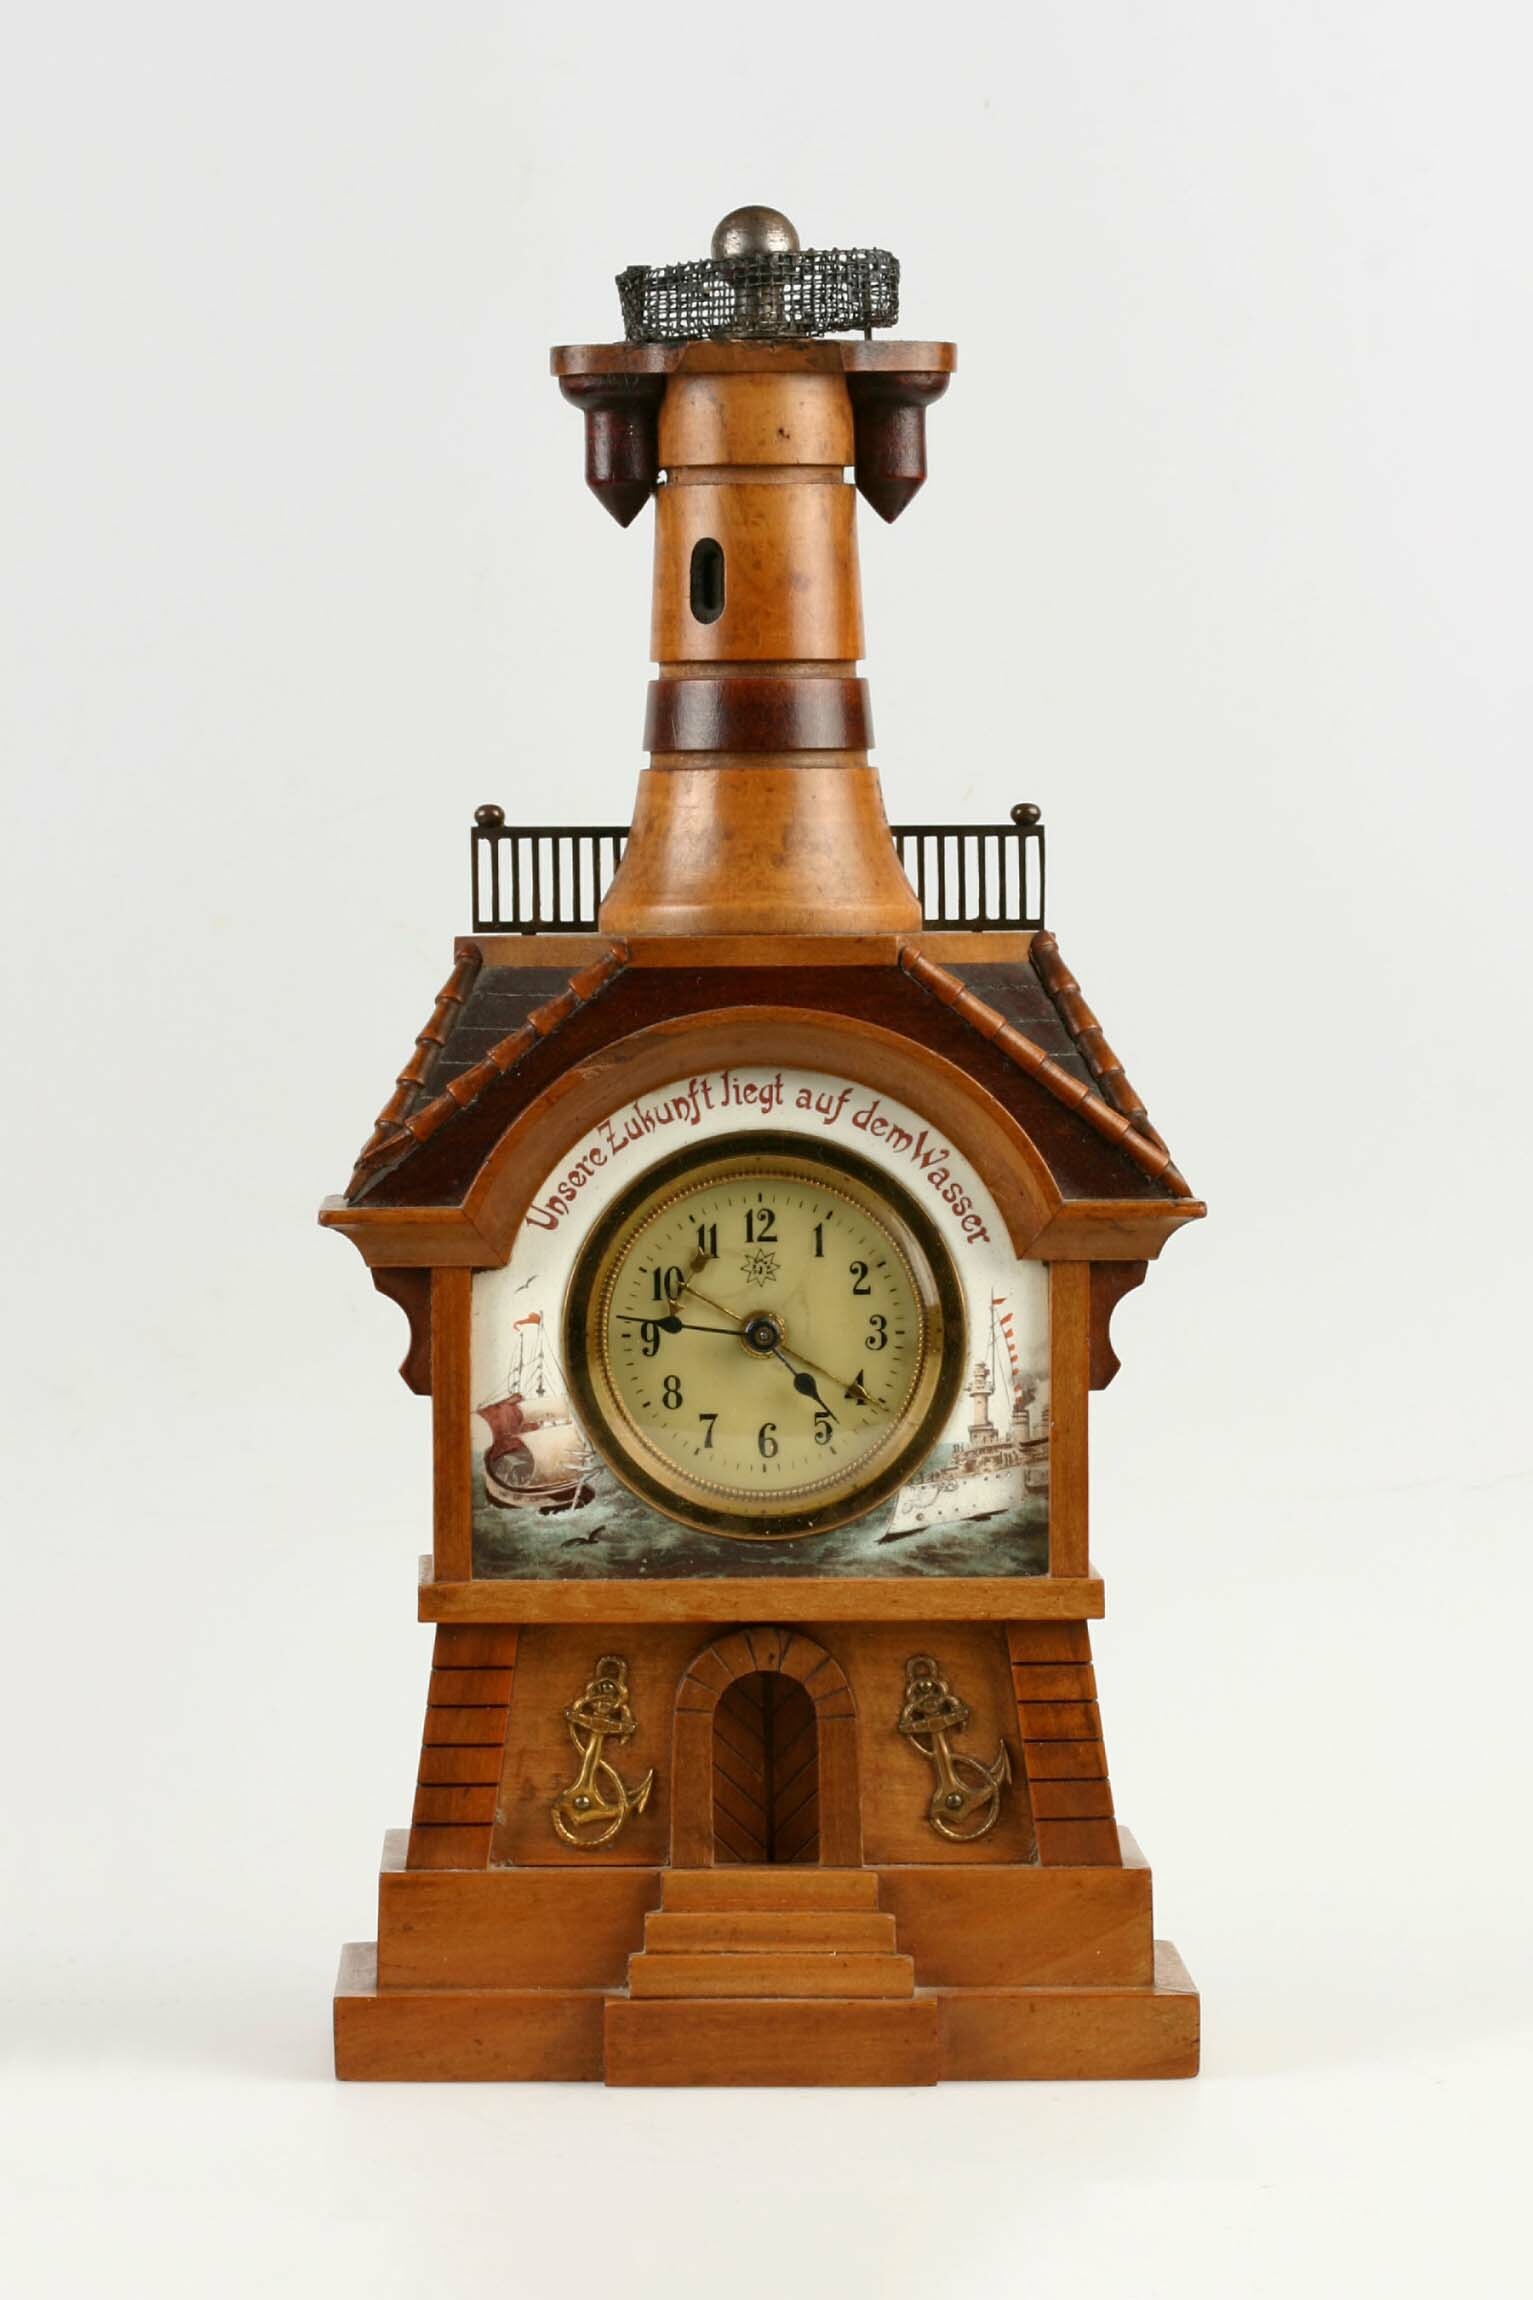 Tischuhr, Junghans, Schramberg, um 1900 (Deutsches Uhrenmuseum CC BY-SA)